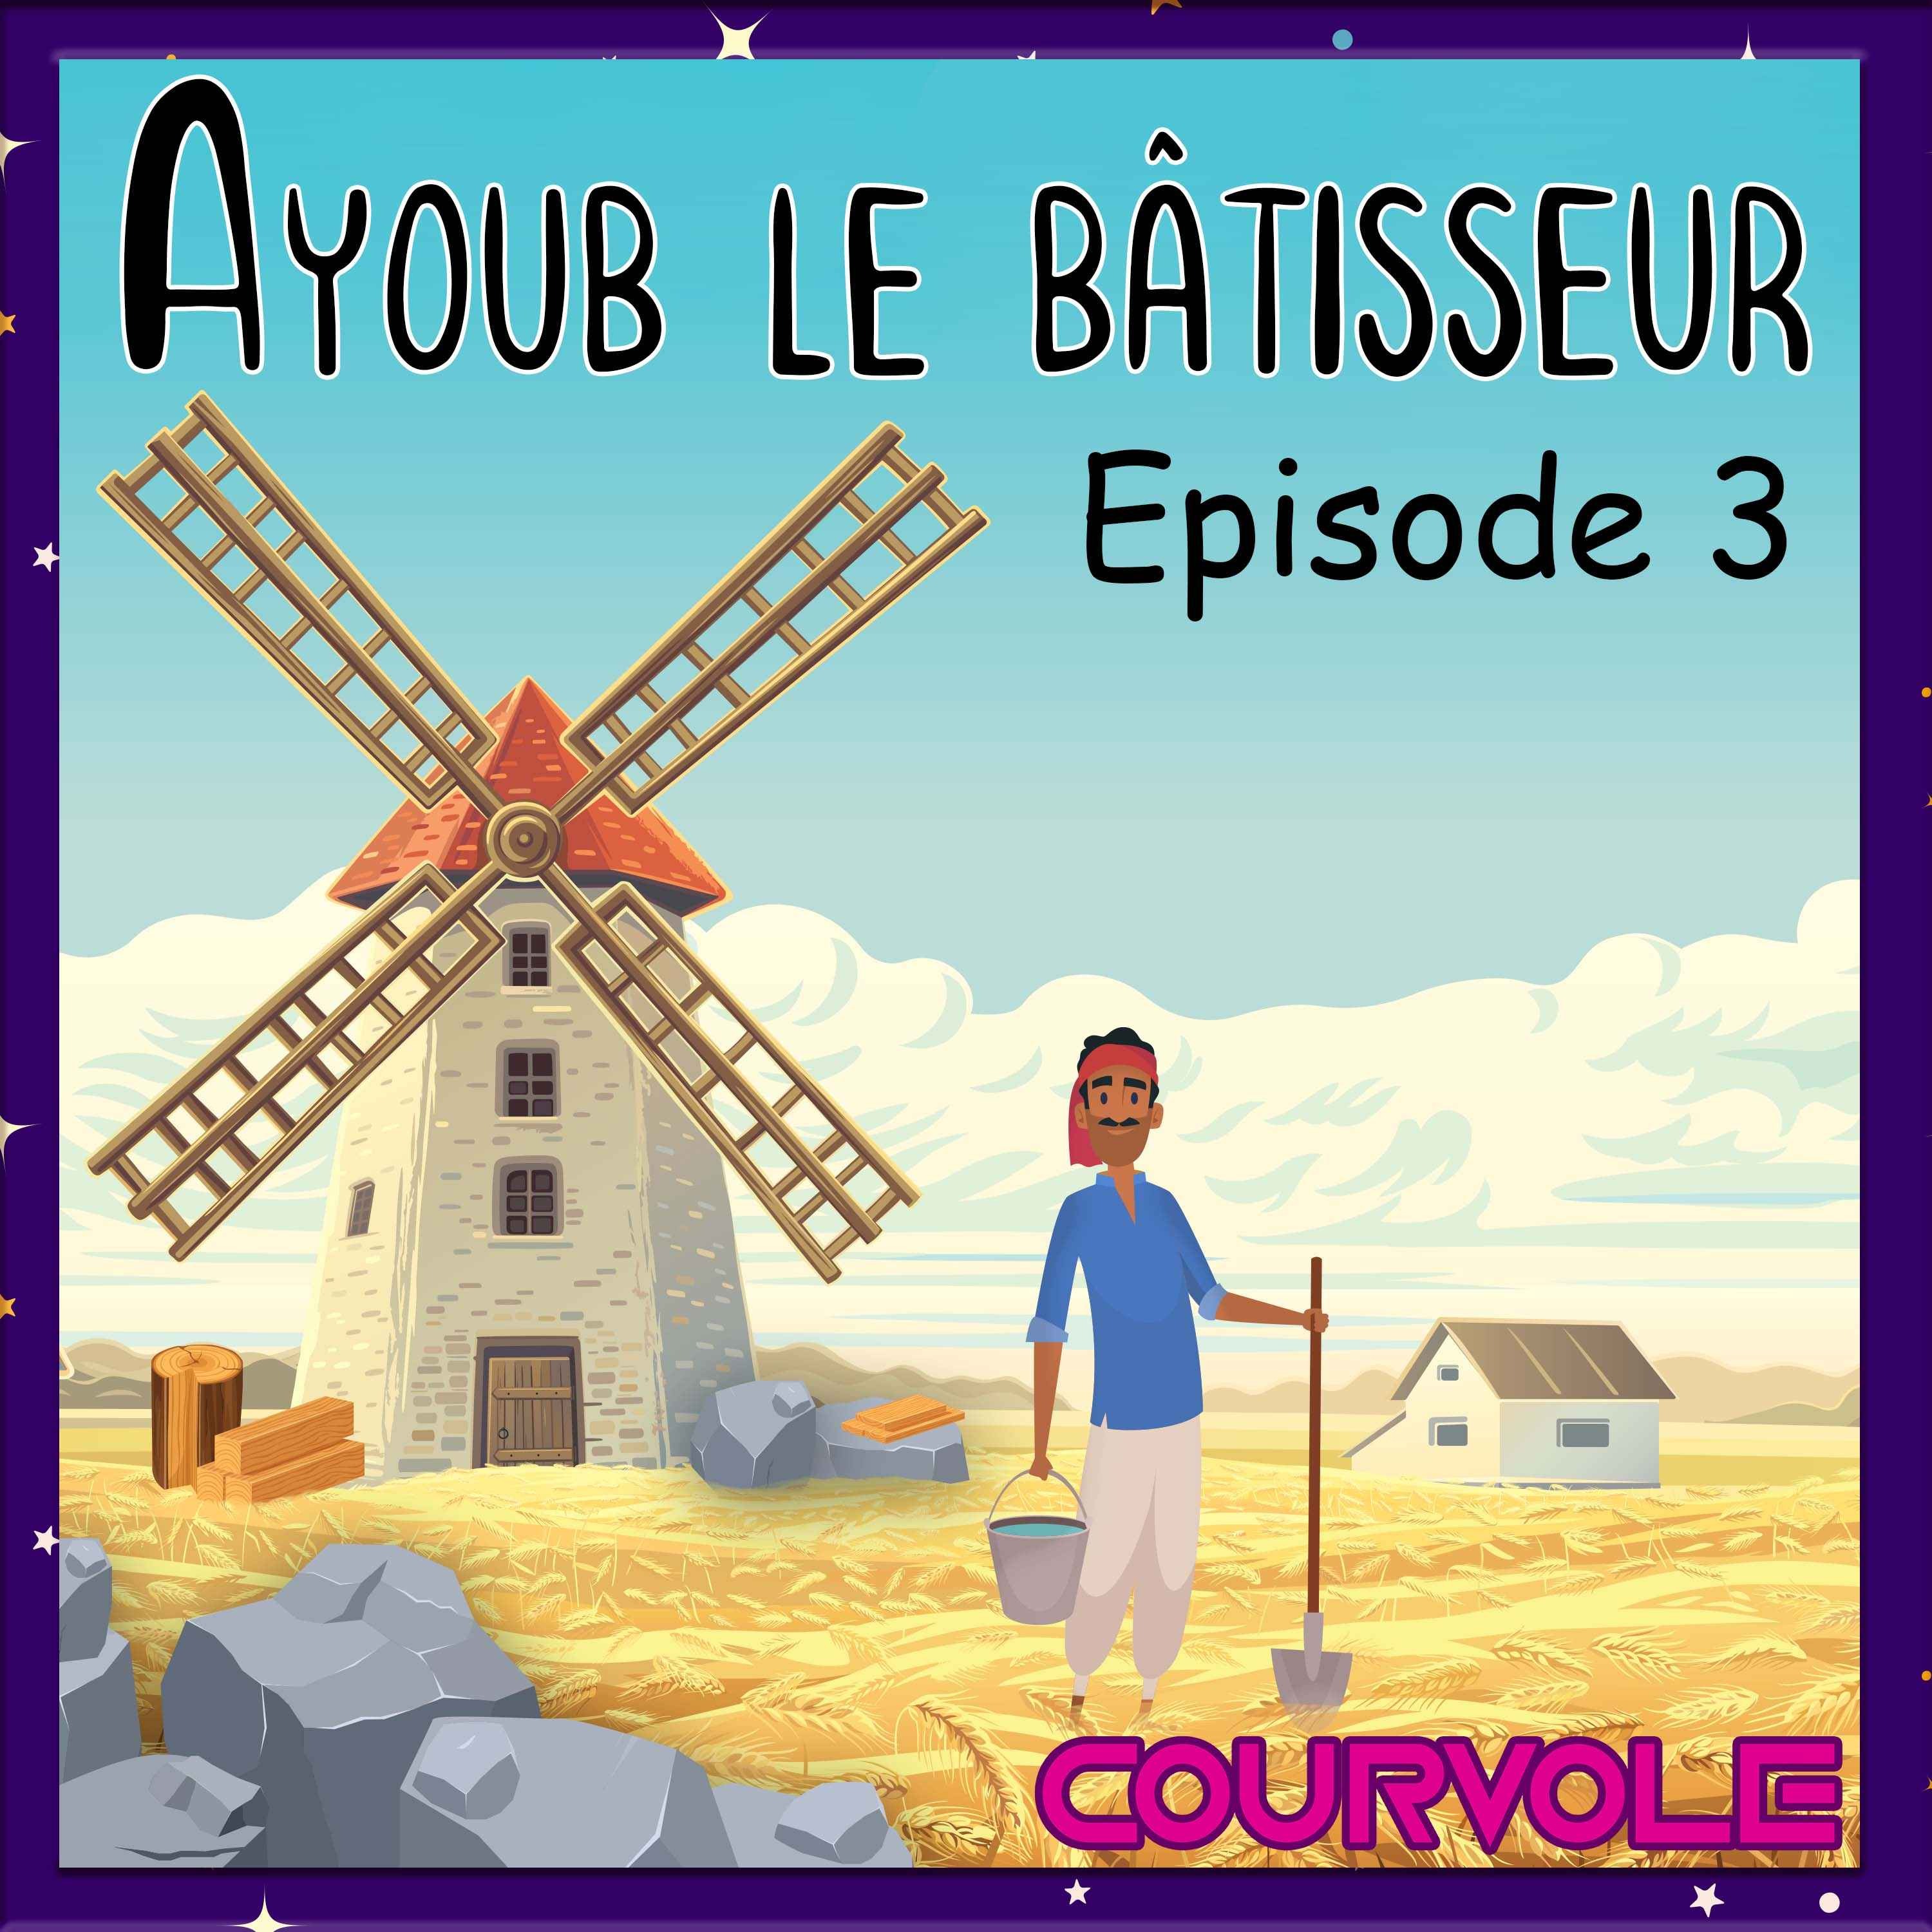 Ayoub le bâtisseur - Episode 3 Image